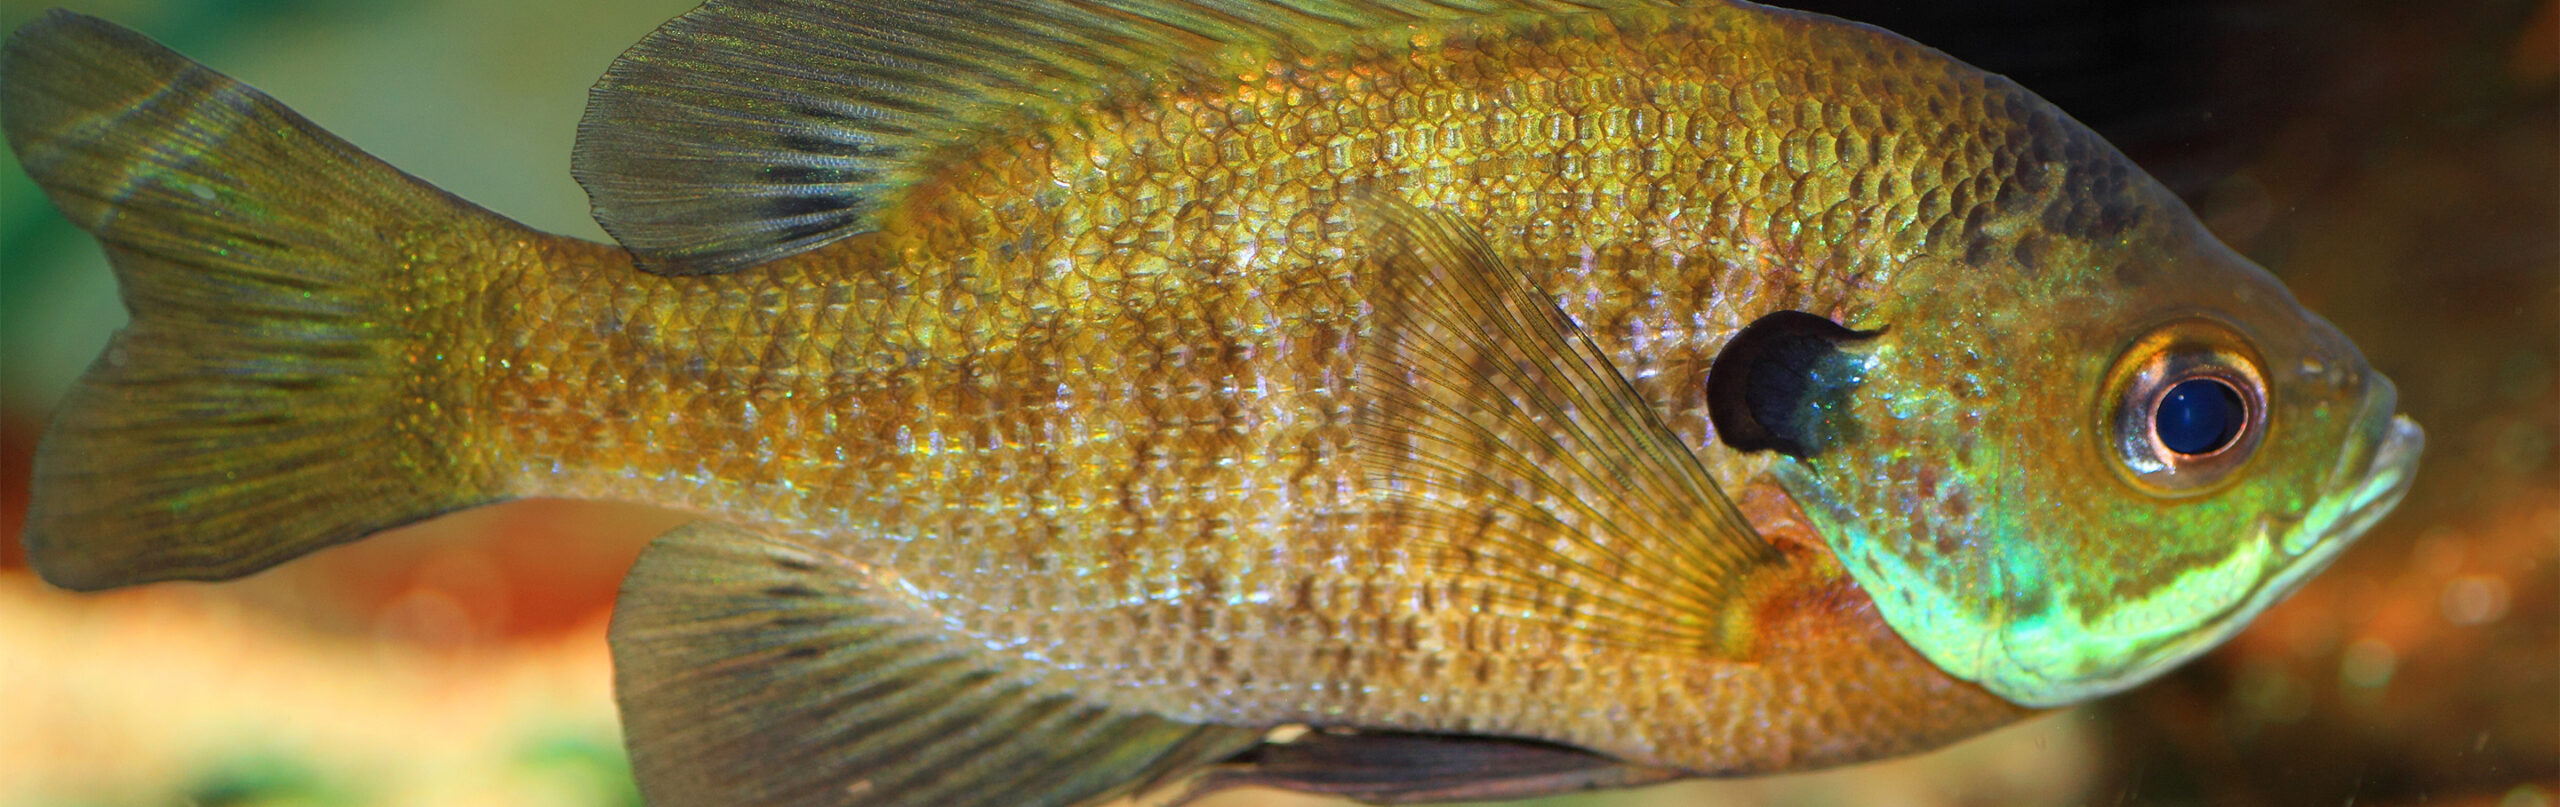 Bluegill - Georgia Aquarium